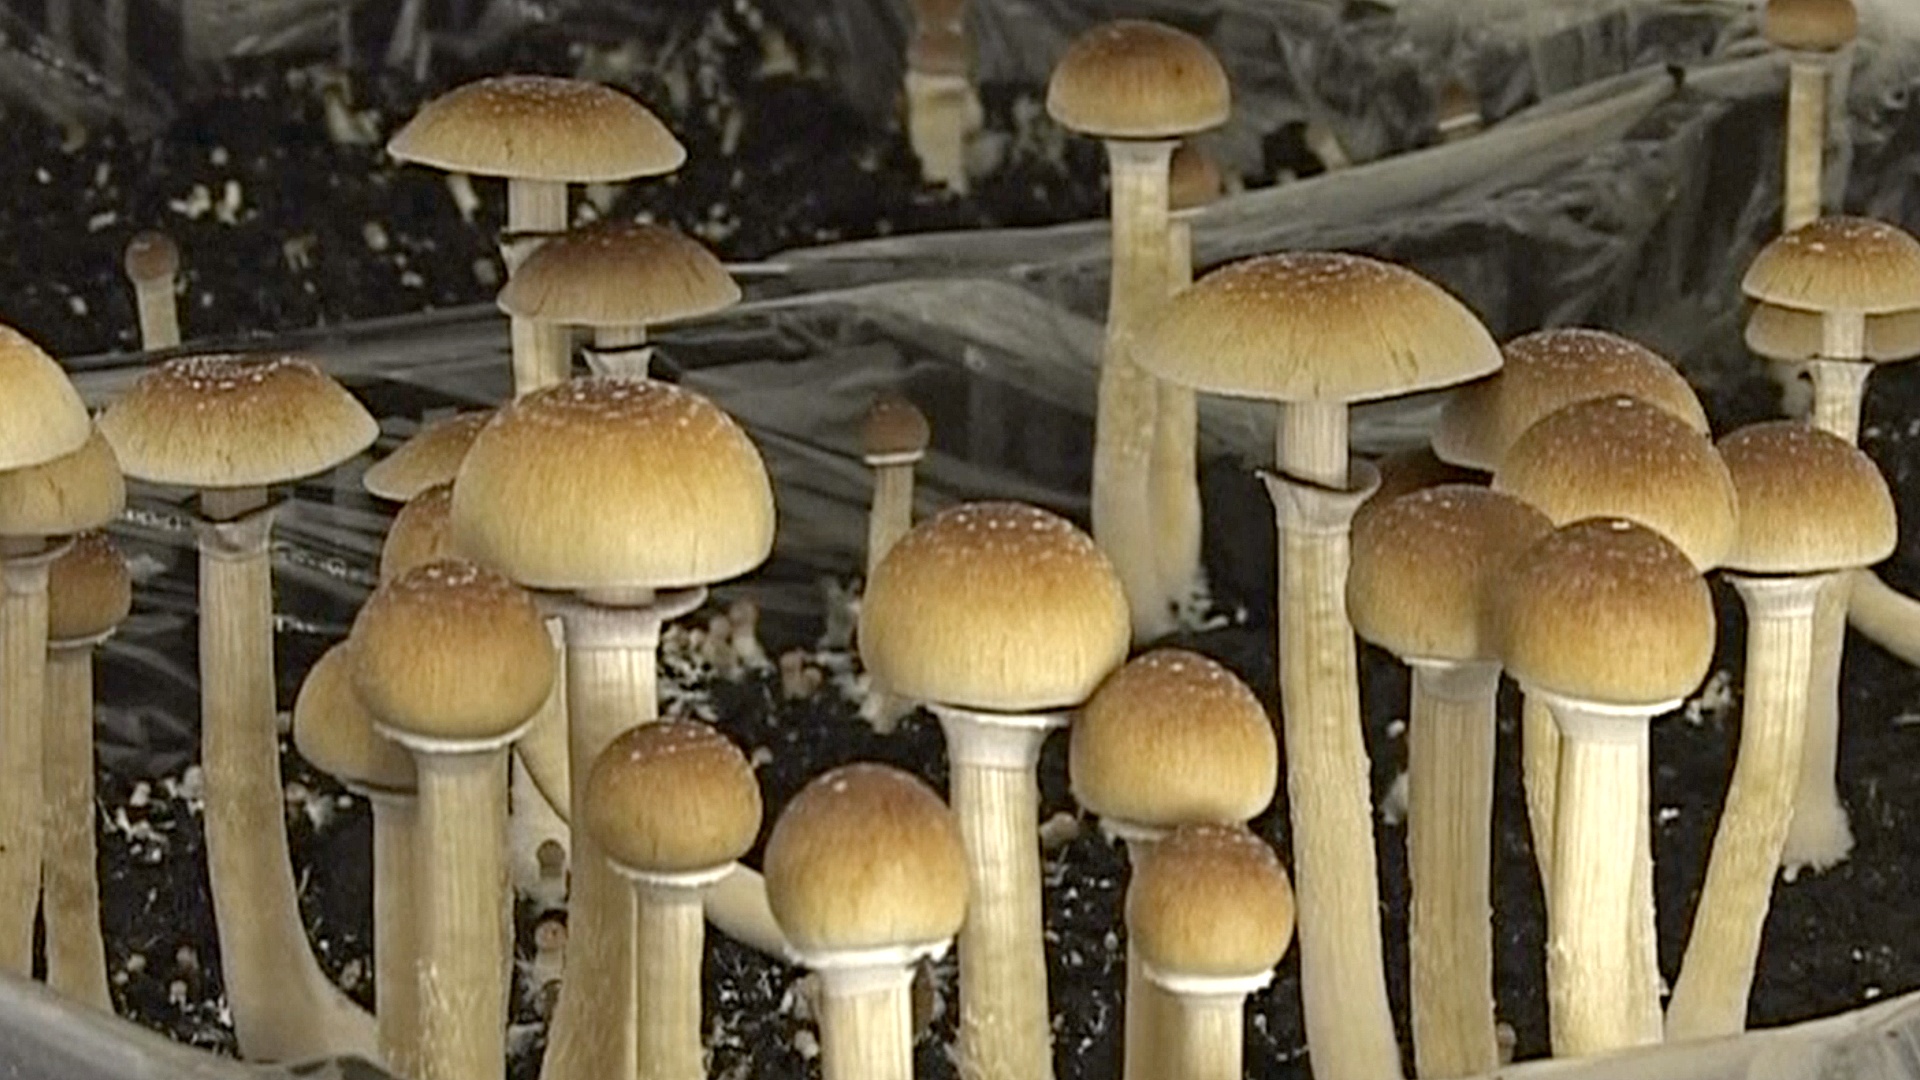 Галлюциногенные грибы помогут при депрессии?